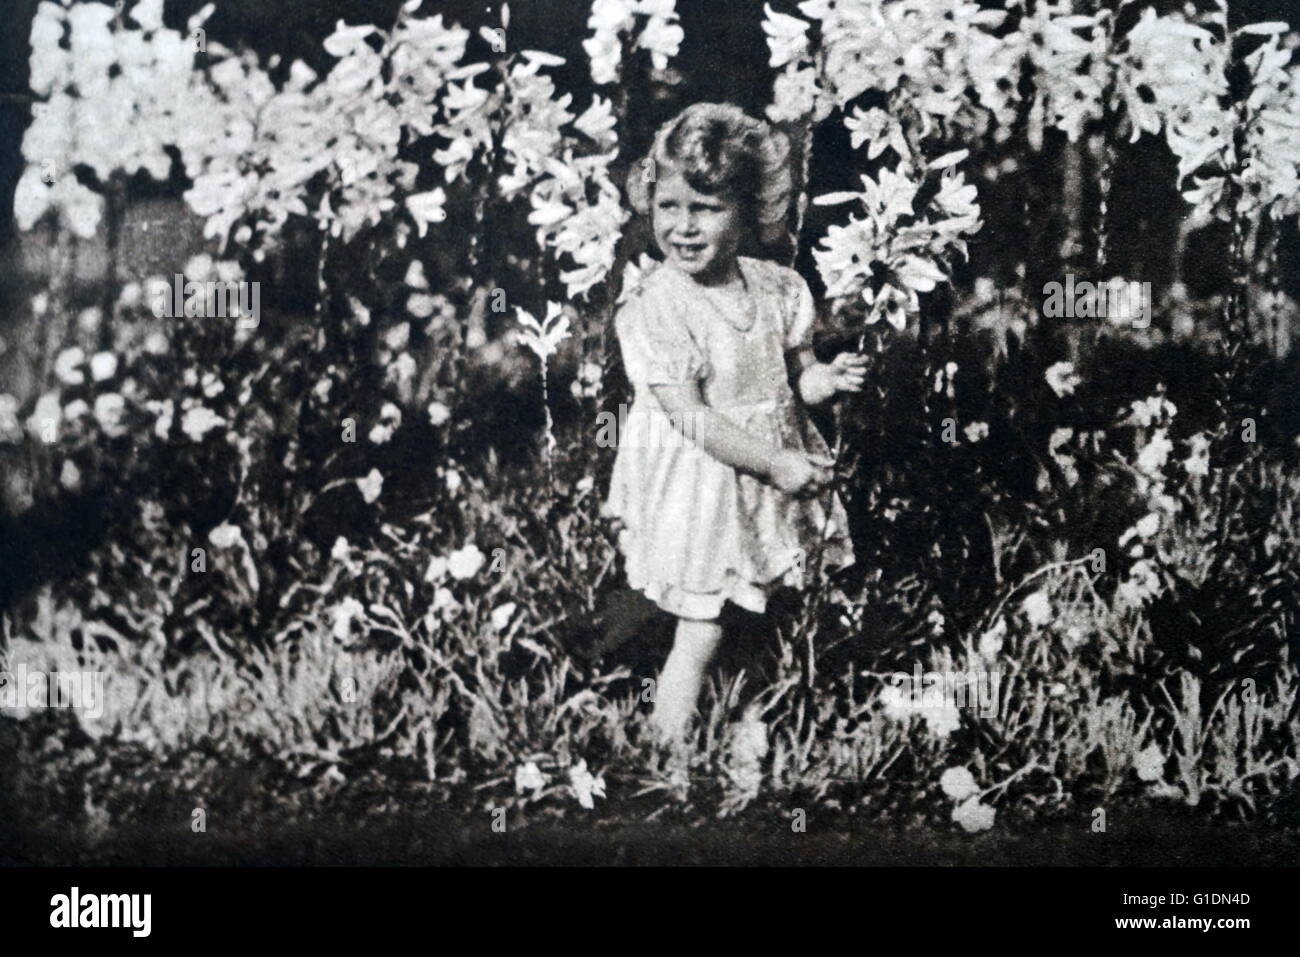 Foto von einer jungen Prinzessin Elizabeth (1926-) die ältere Schwester von Prinzessin Margaret (1930-2002) und zukünftige Königin unter den Blumen spielen. Vom 20. Jahrhundert Stockfoto